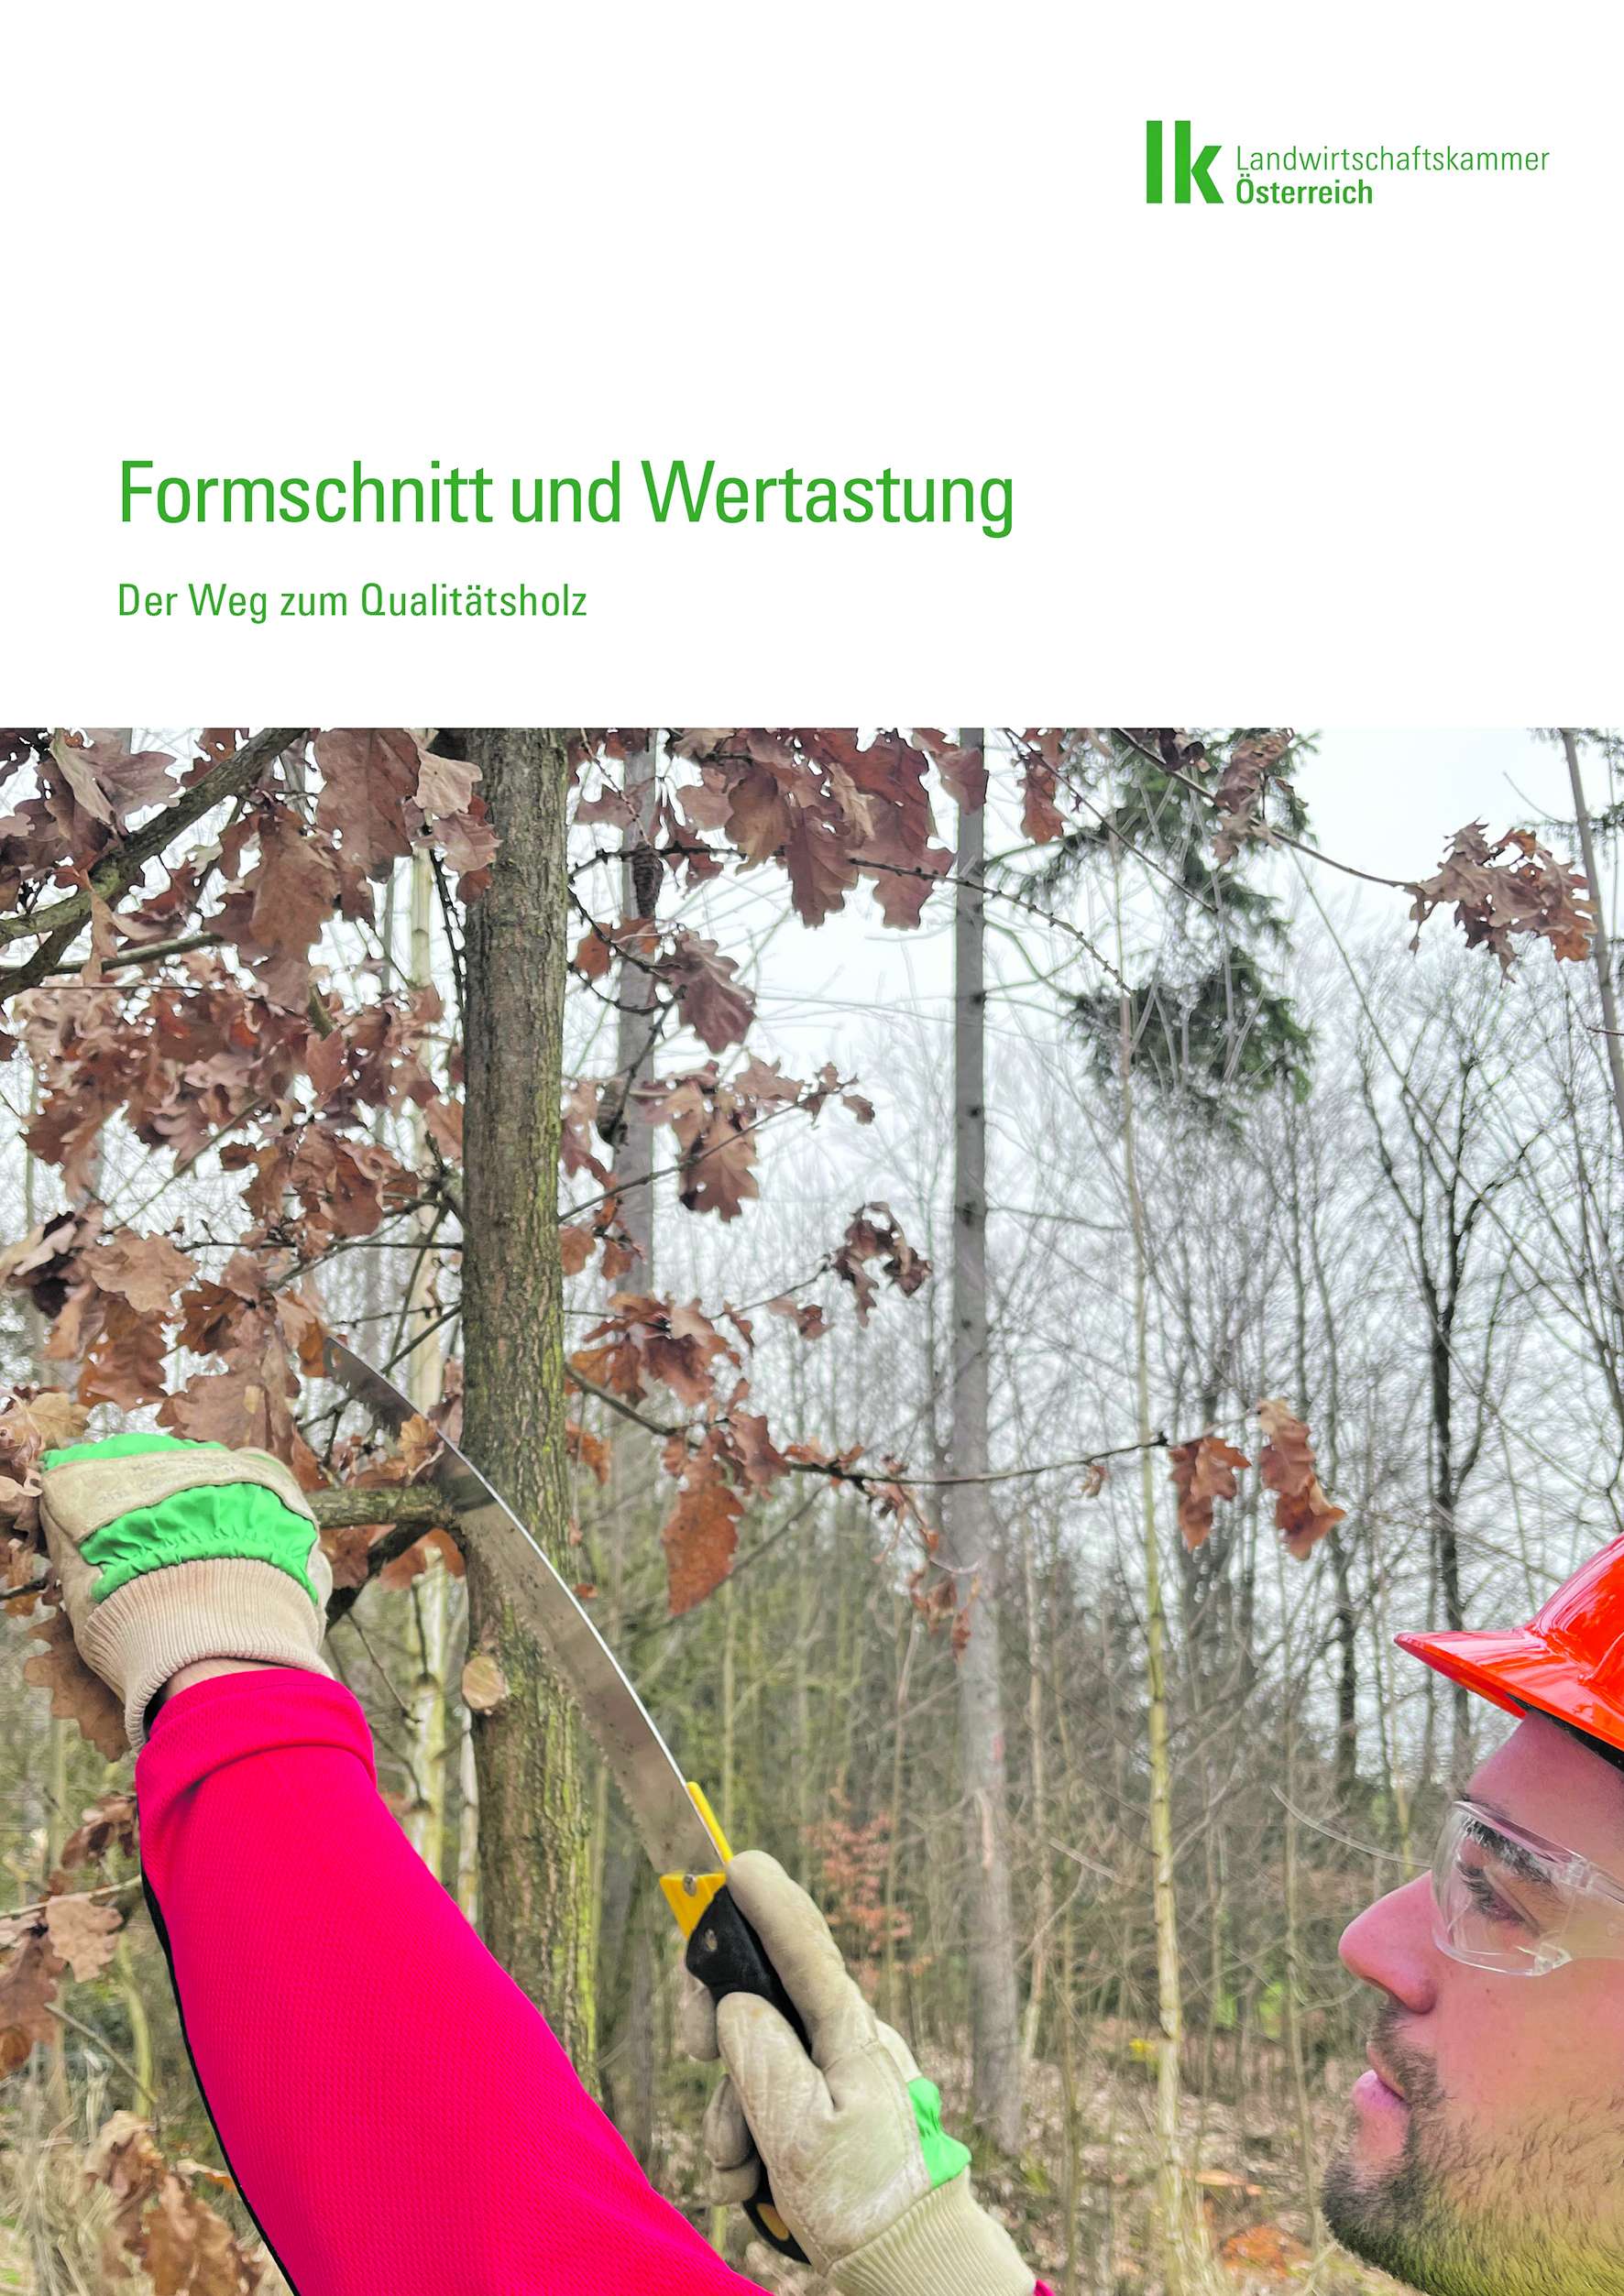 Forst-Broschüre: Formschnitt und Wertastung.jpg